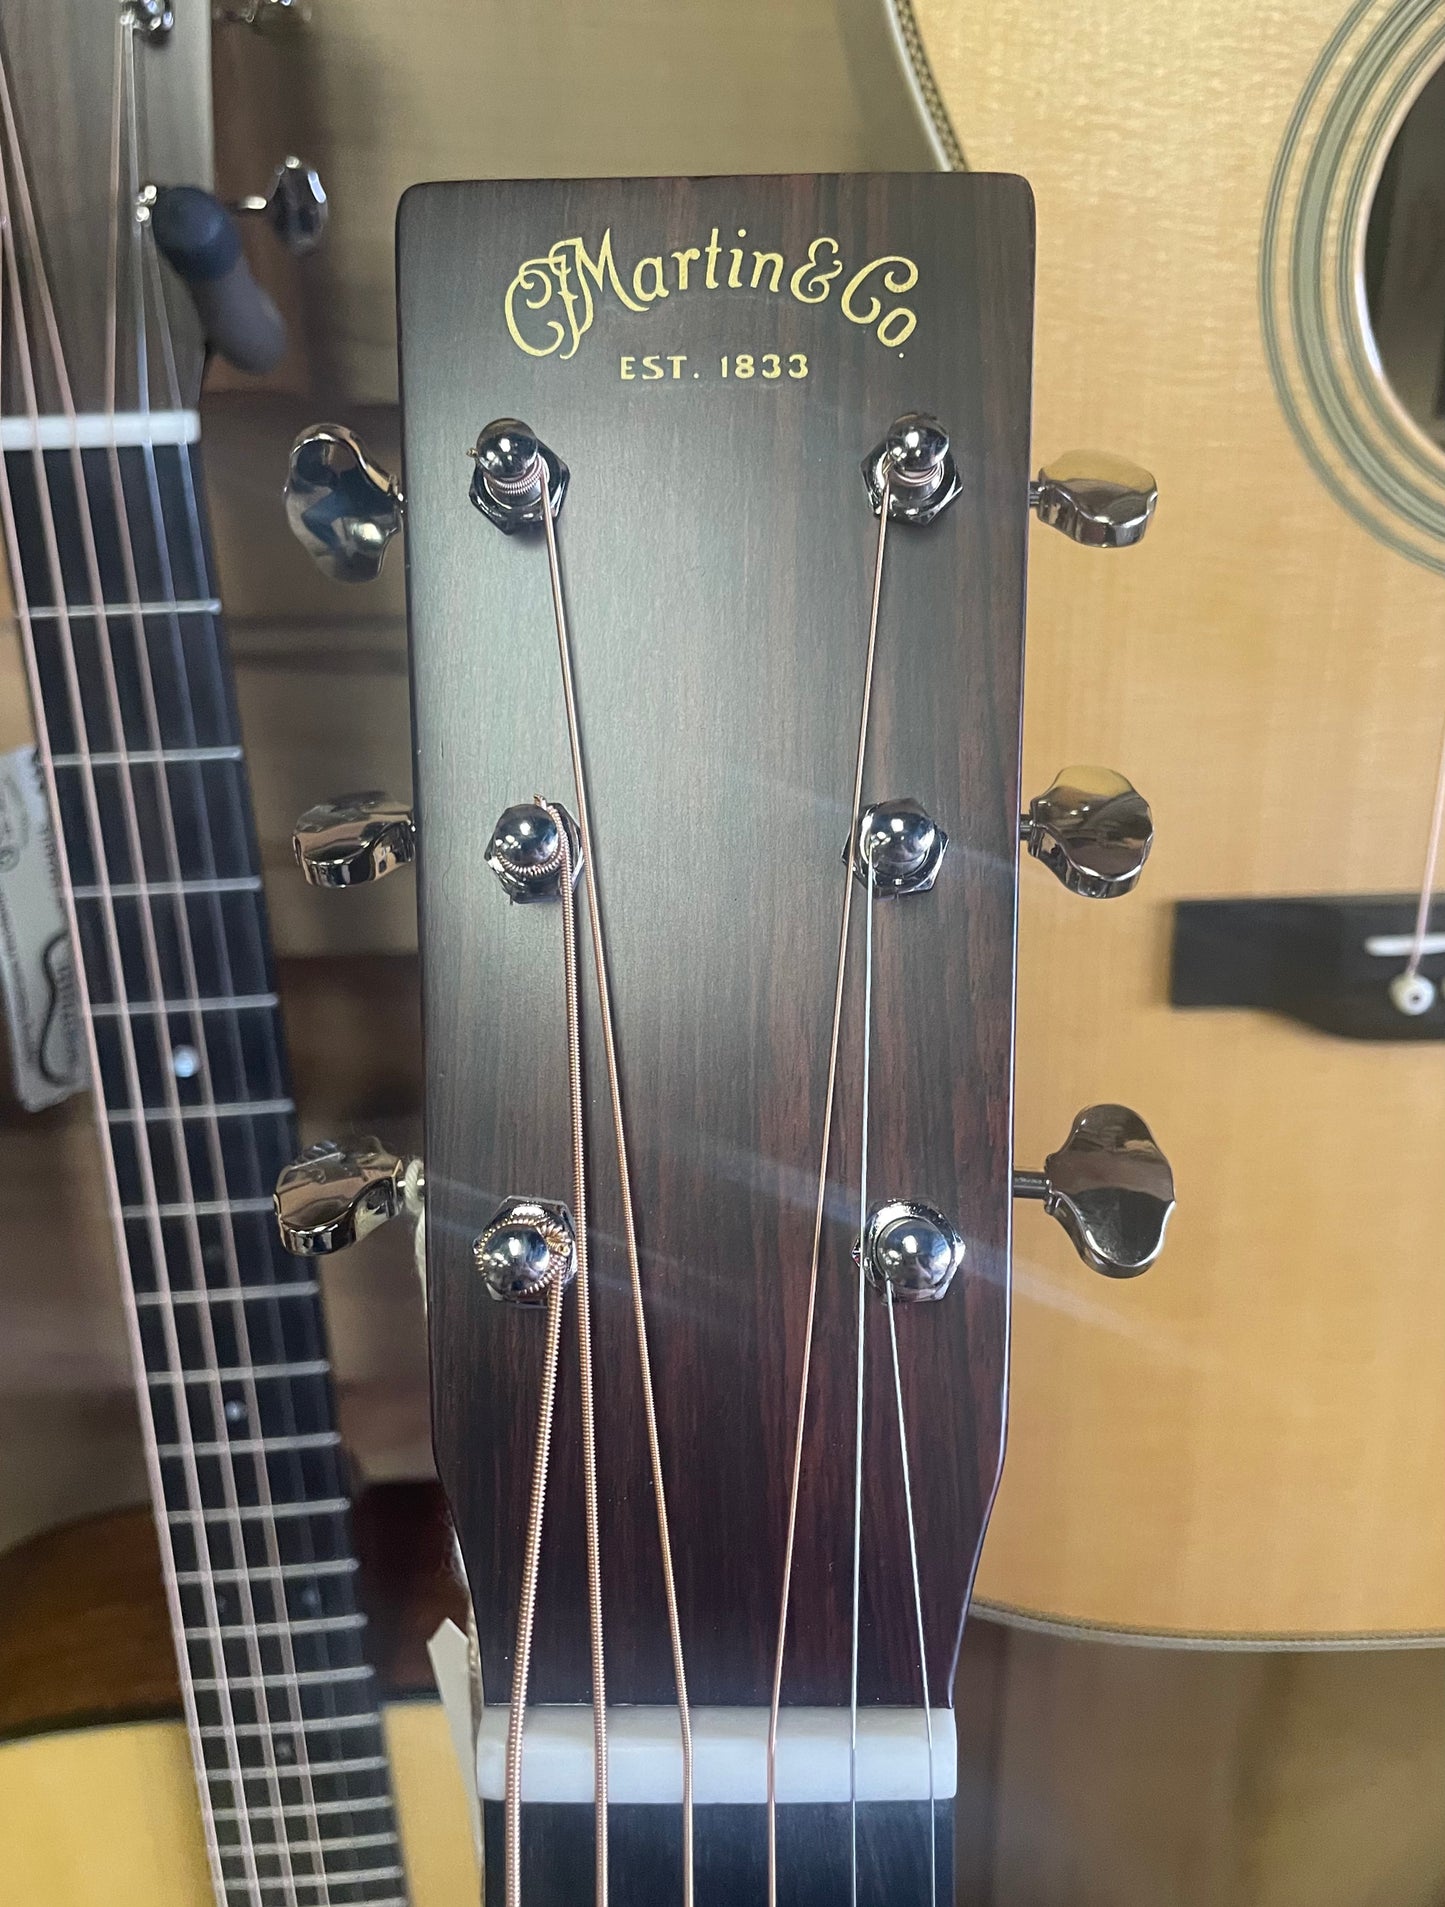 Martin D-18 Satin Acoustic Guitar - Satin Natural (NEW)